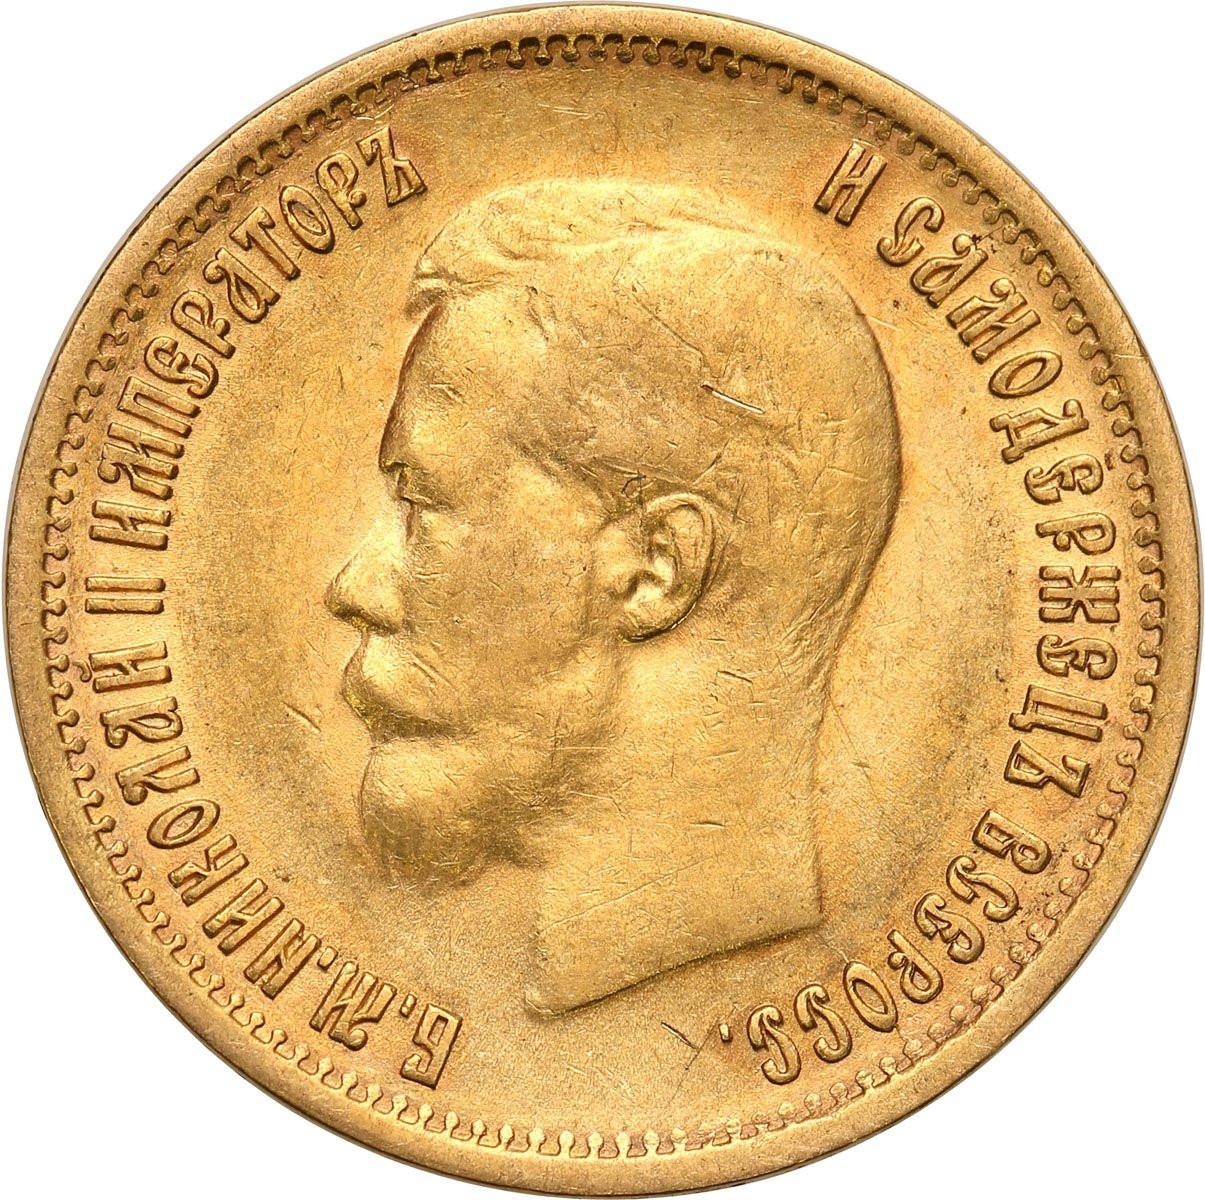 Rosja. Mikołaj II. 10 rubli 1899 АГ - AG, Petersburg